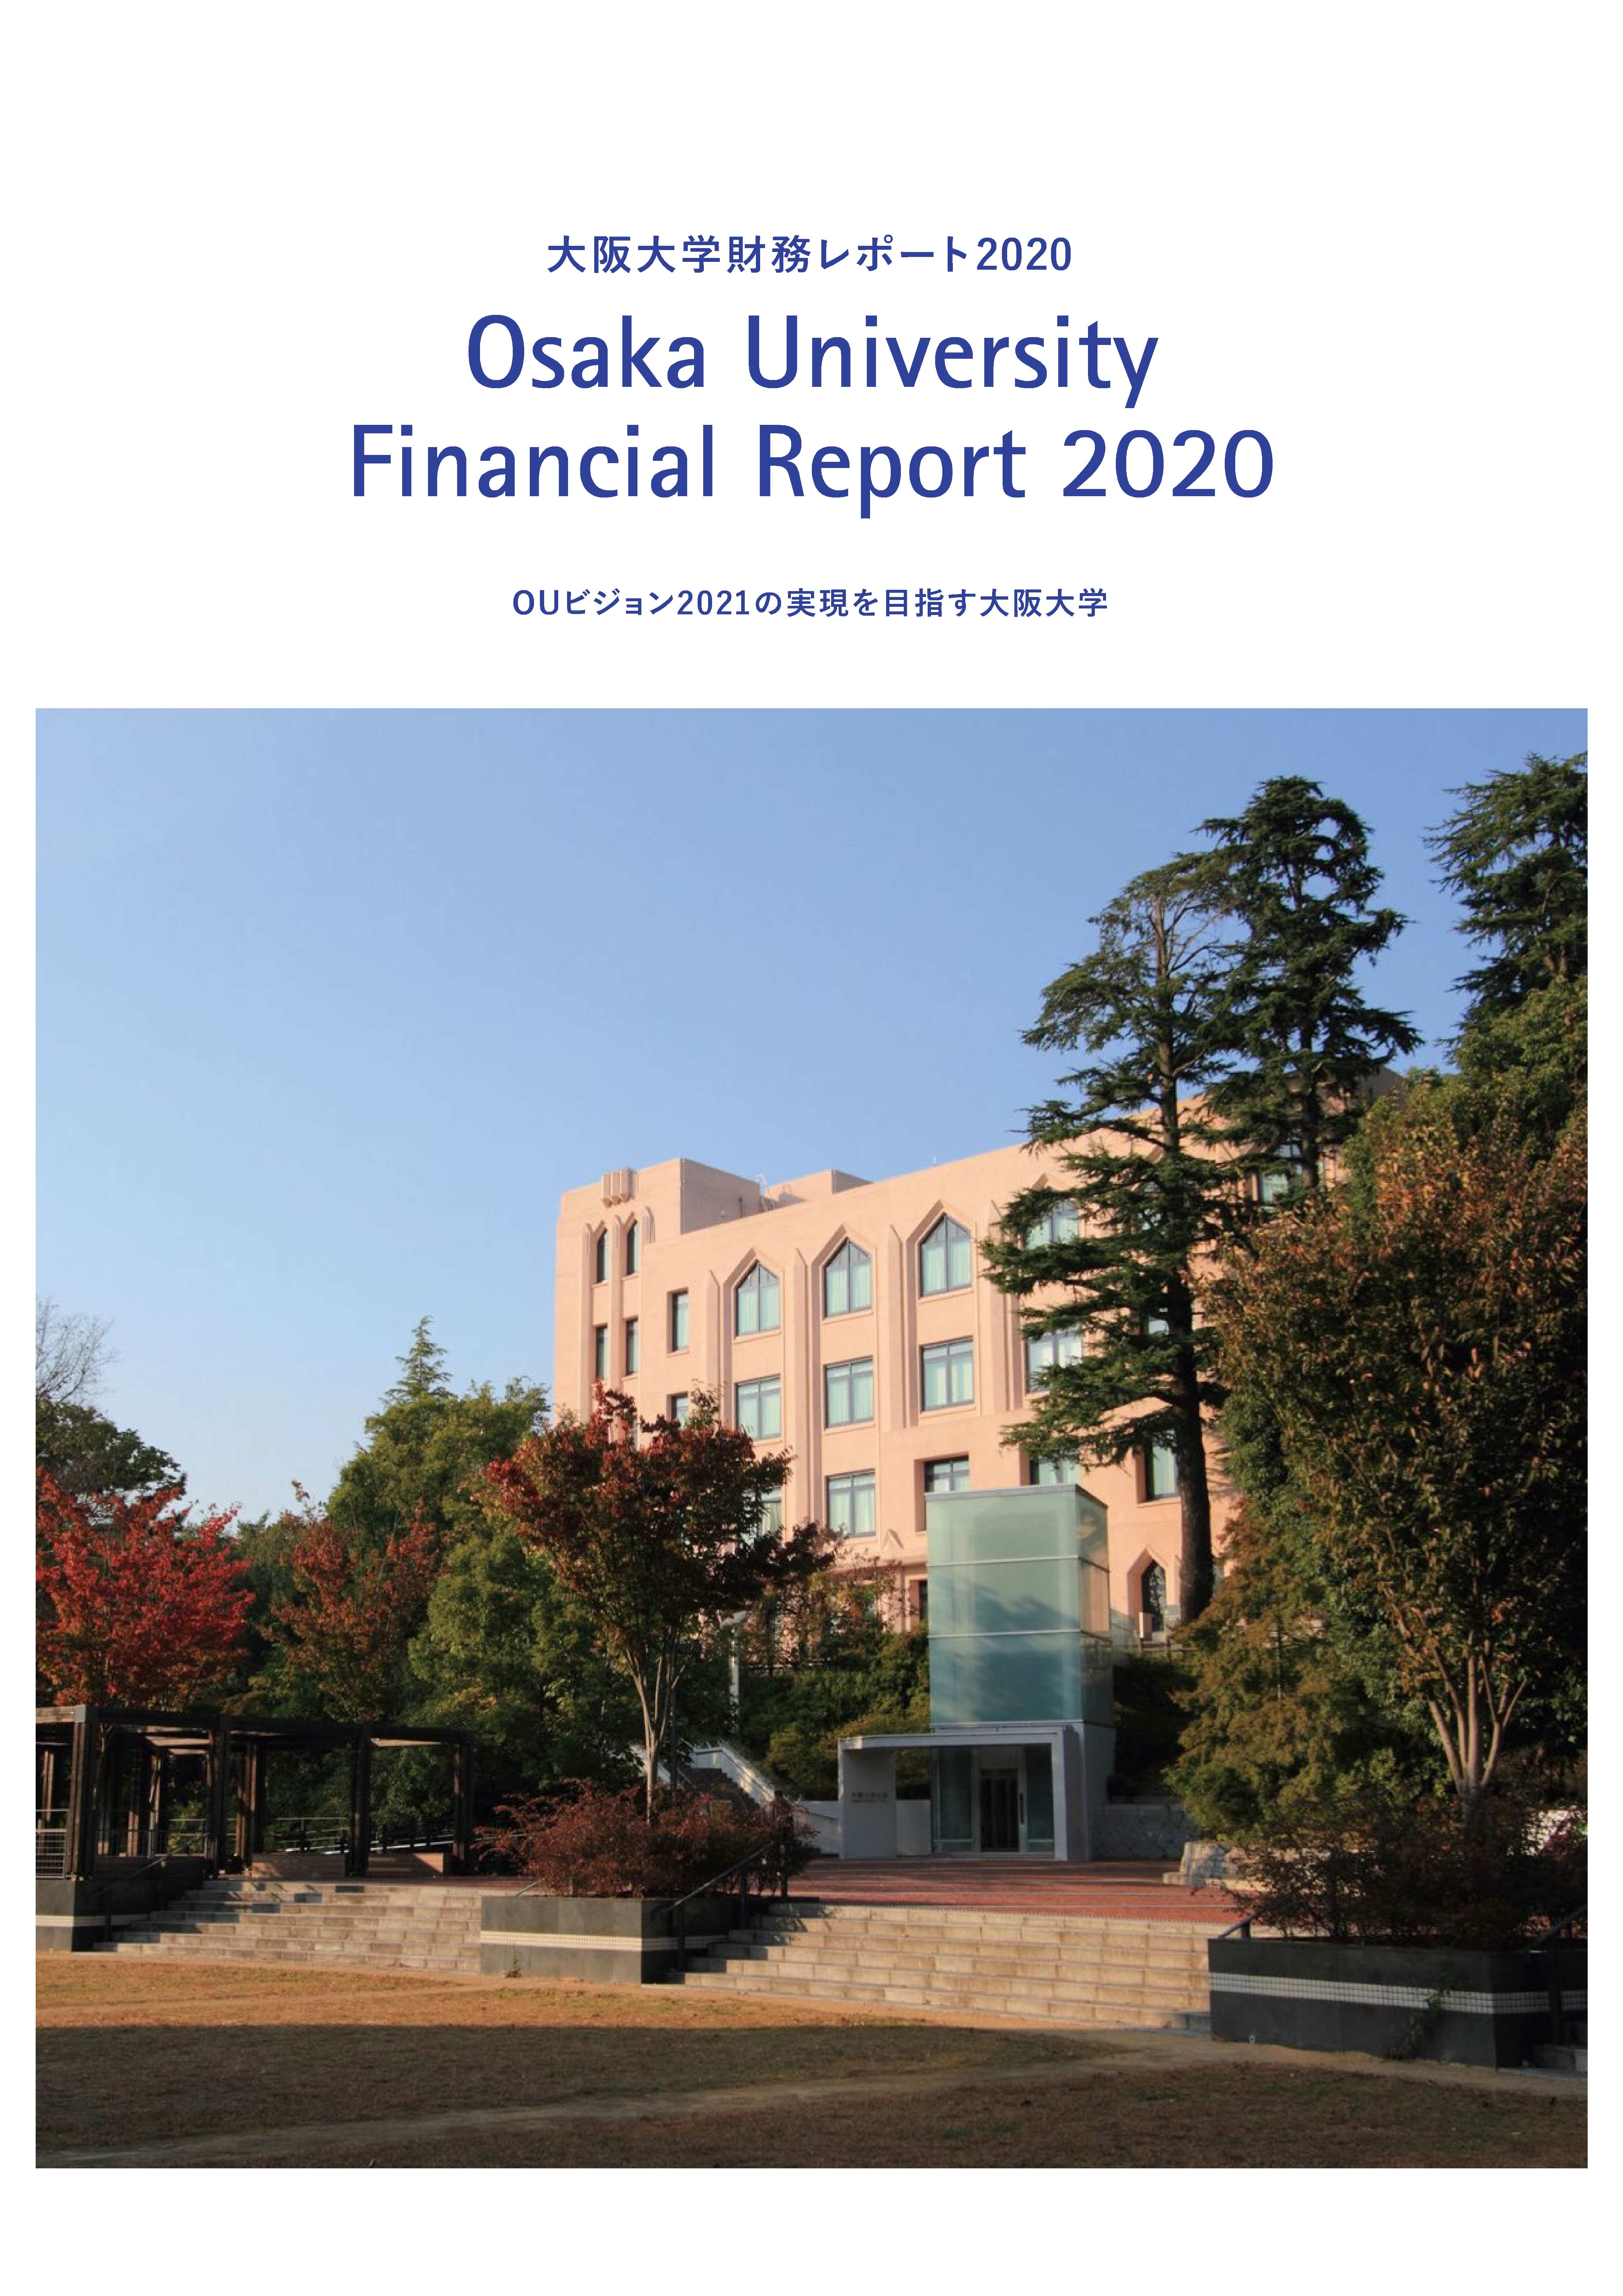 大阪大学財務レポート2020を発行しました